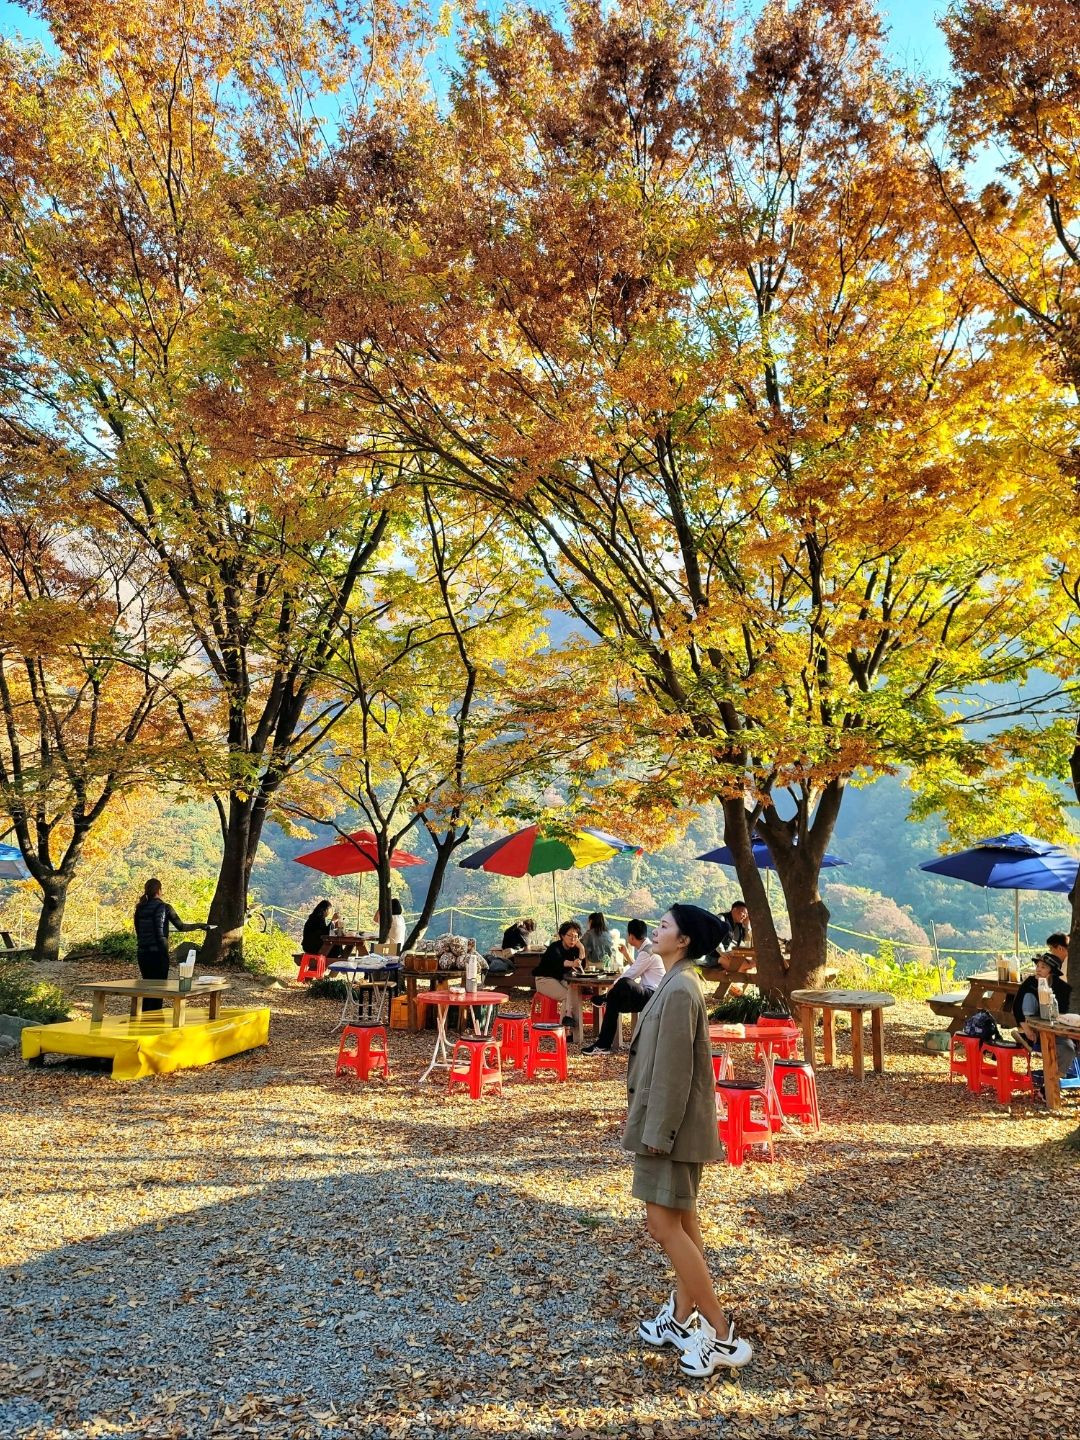 虽然是密阳,但釜山的山景美食店⛰️